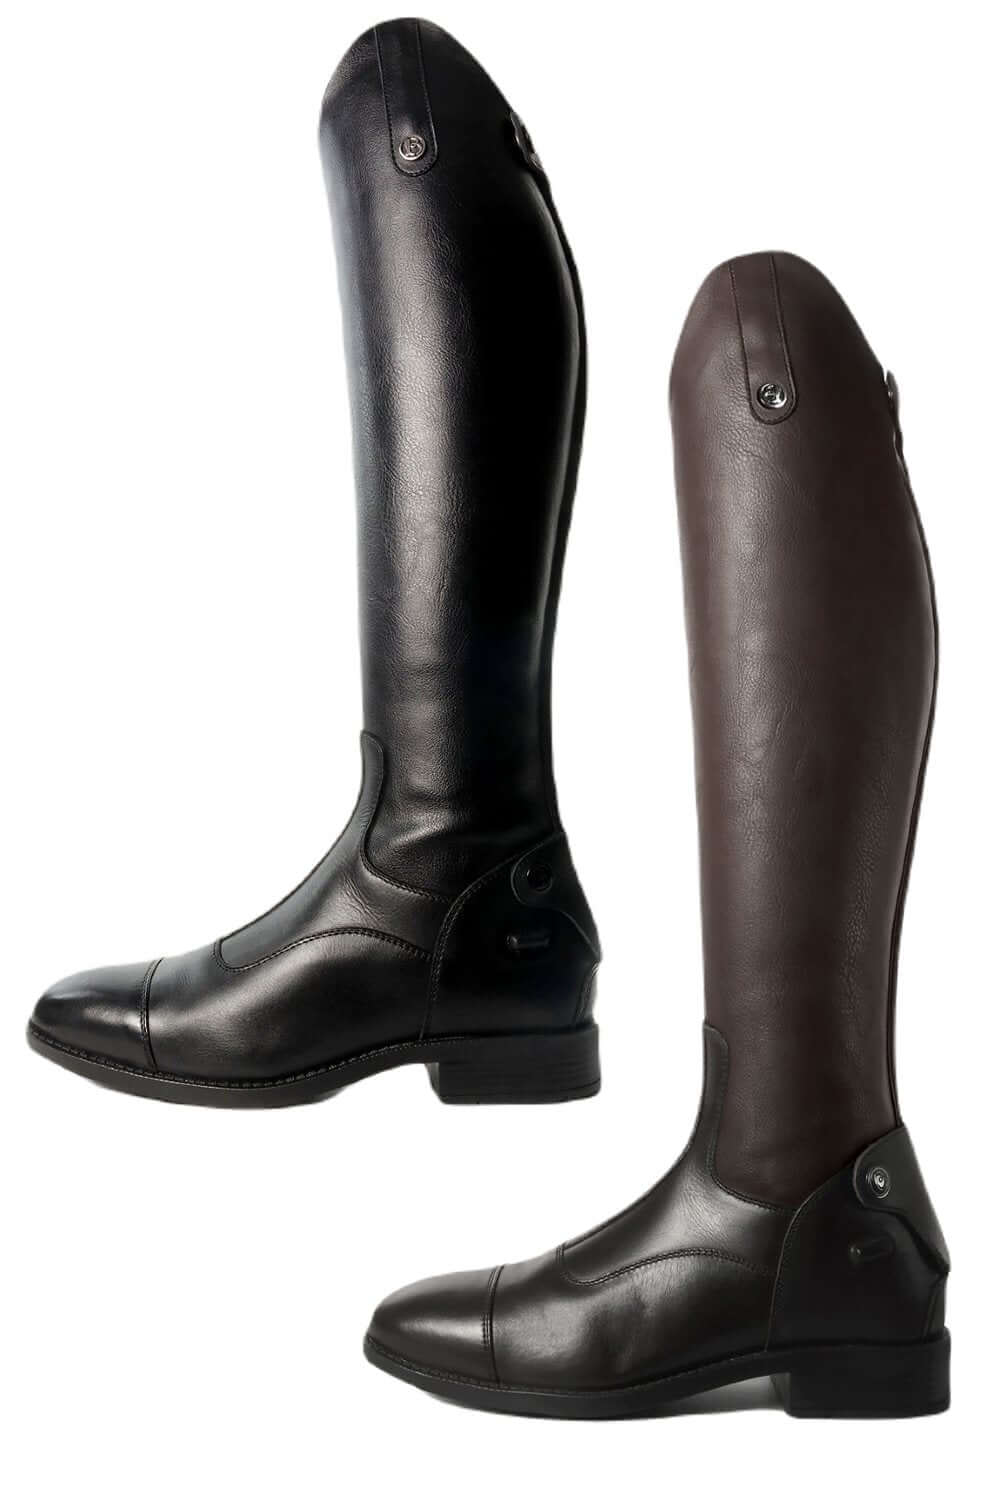 Brogini Casperia V2 3 D Stretch Boots in Black and Brown